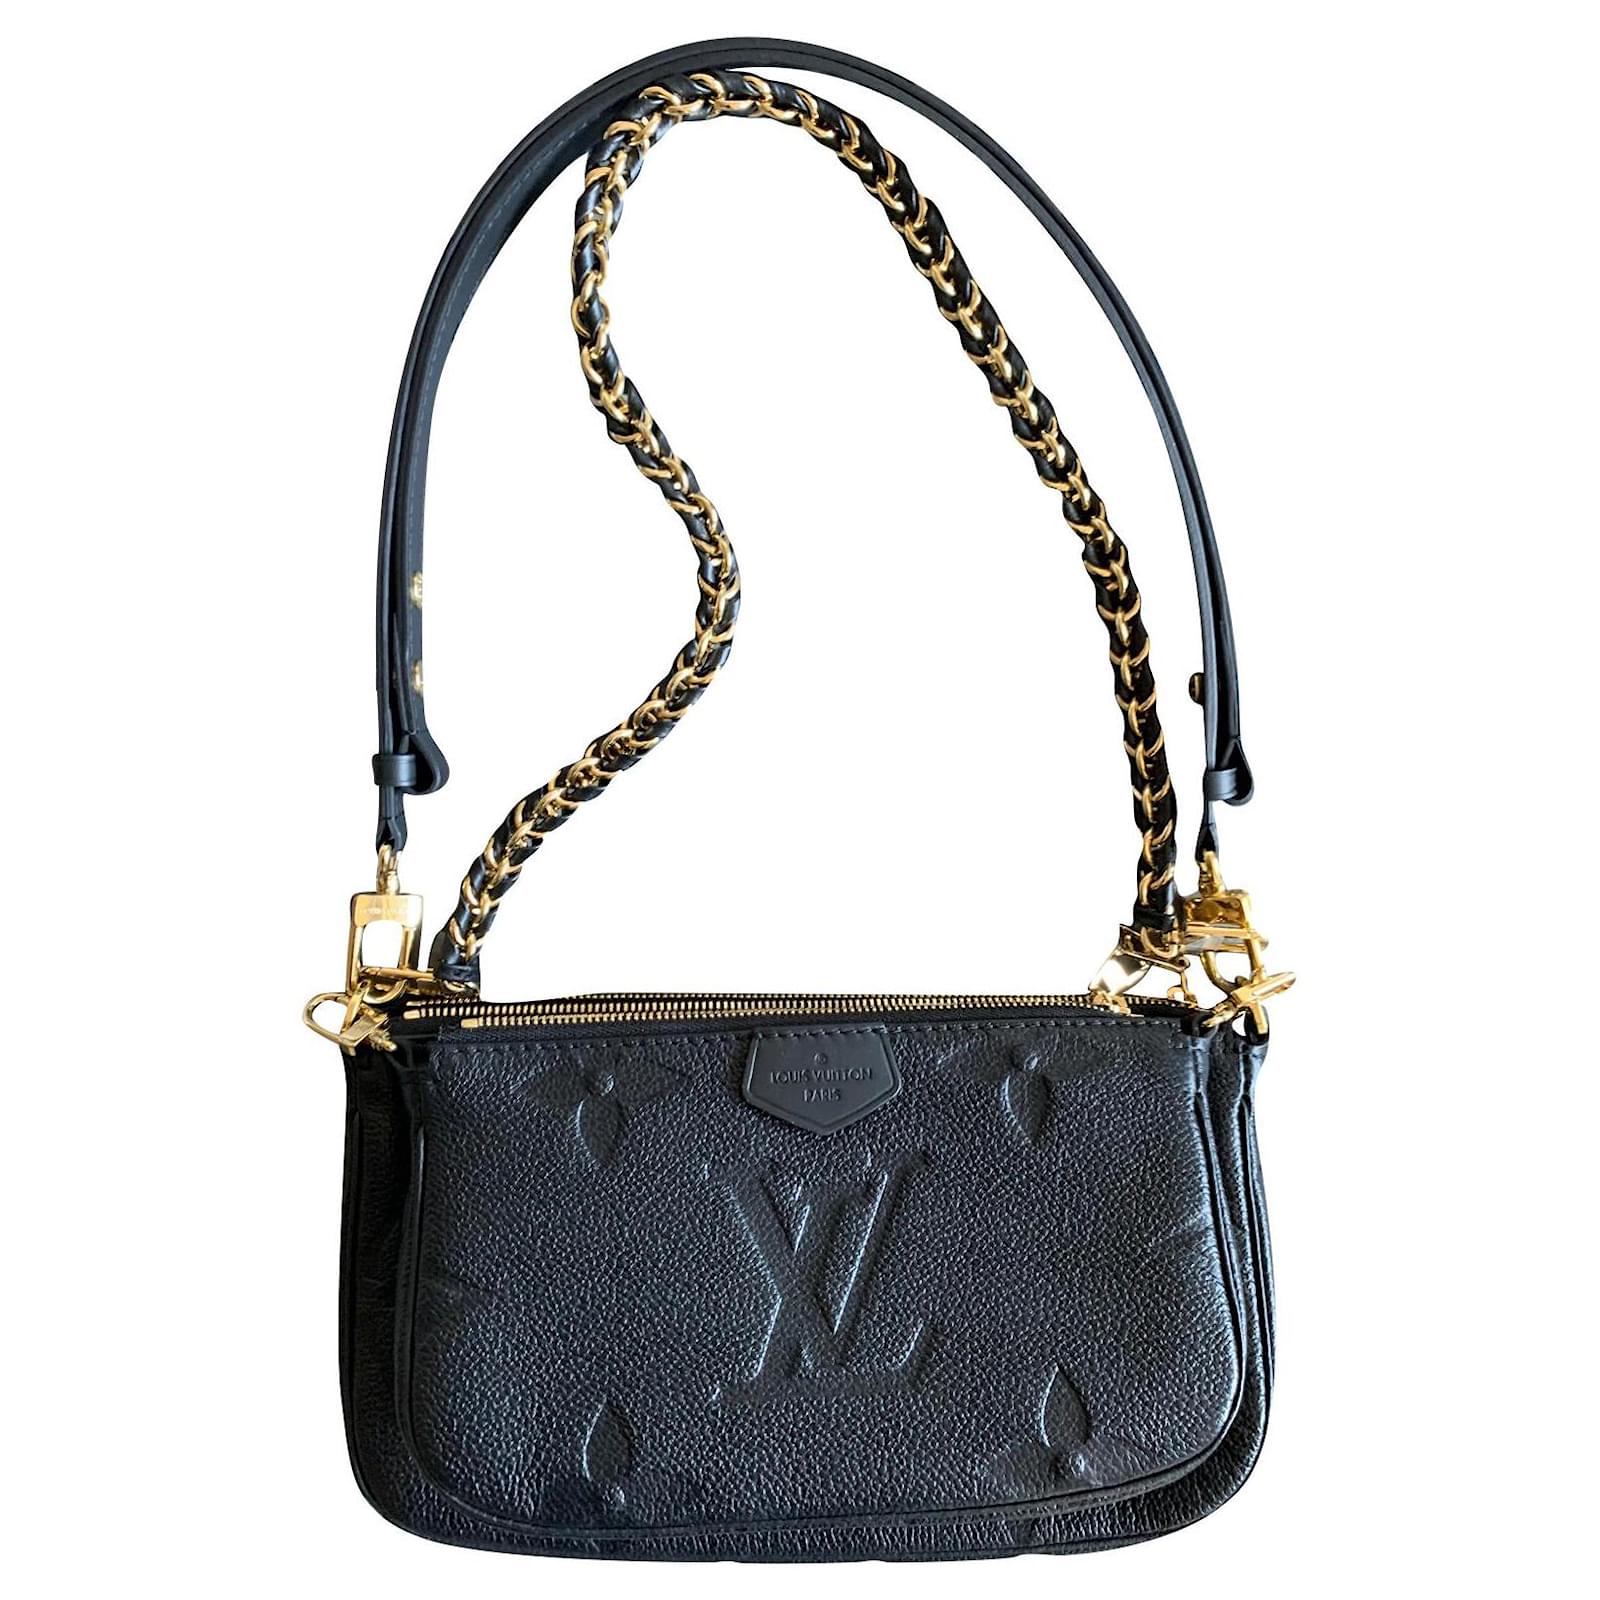 Multi pochette accessoires leather handbag Louis Vuitton Black in Leather -  29679398